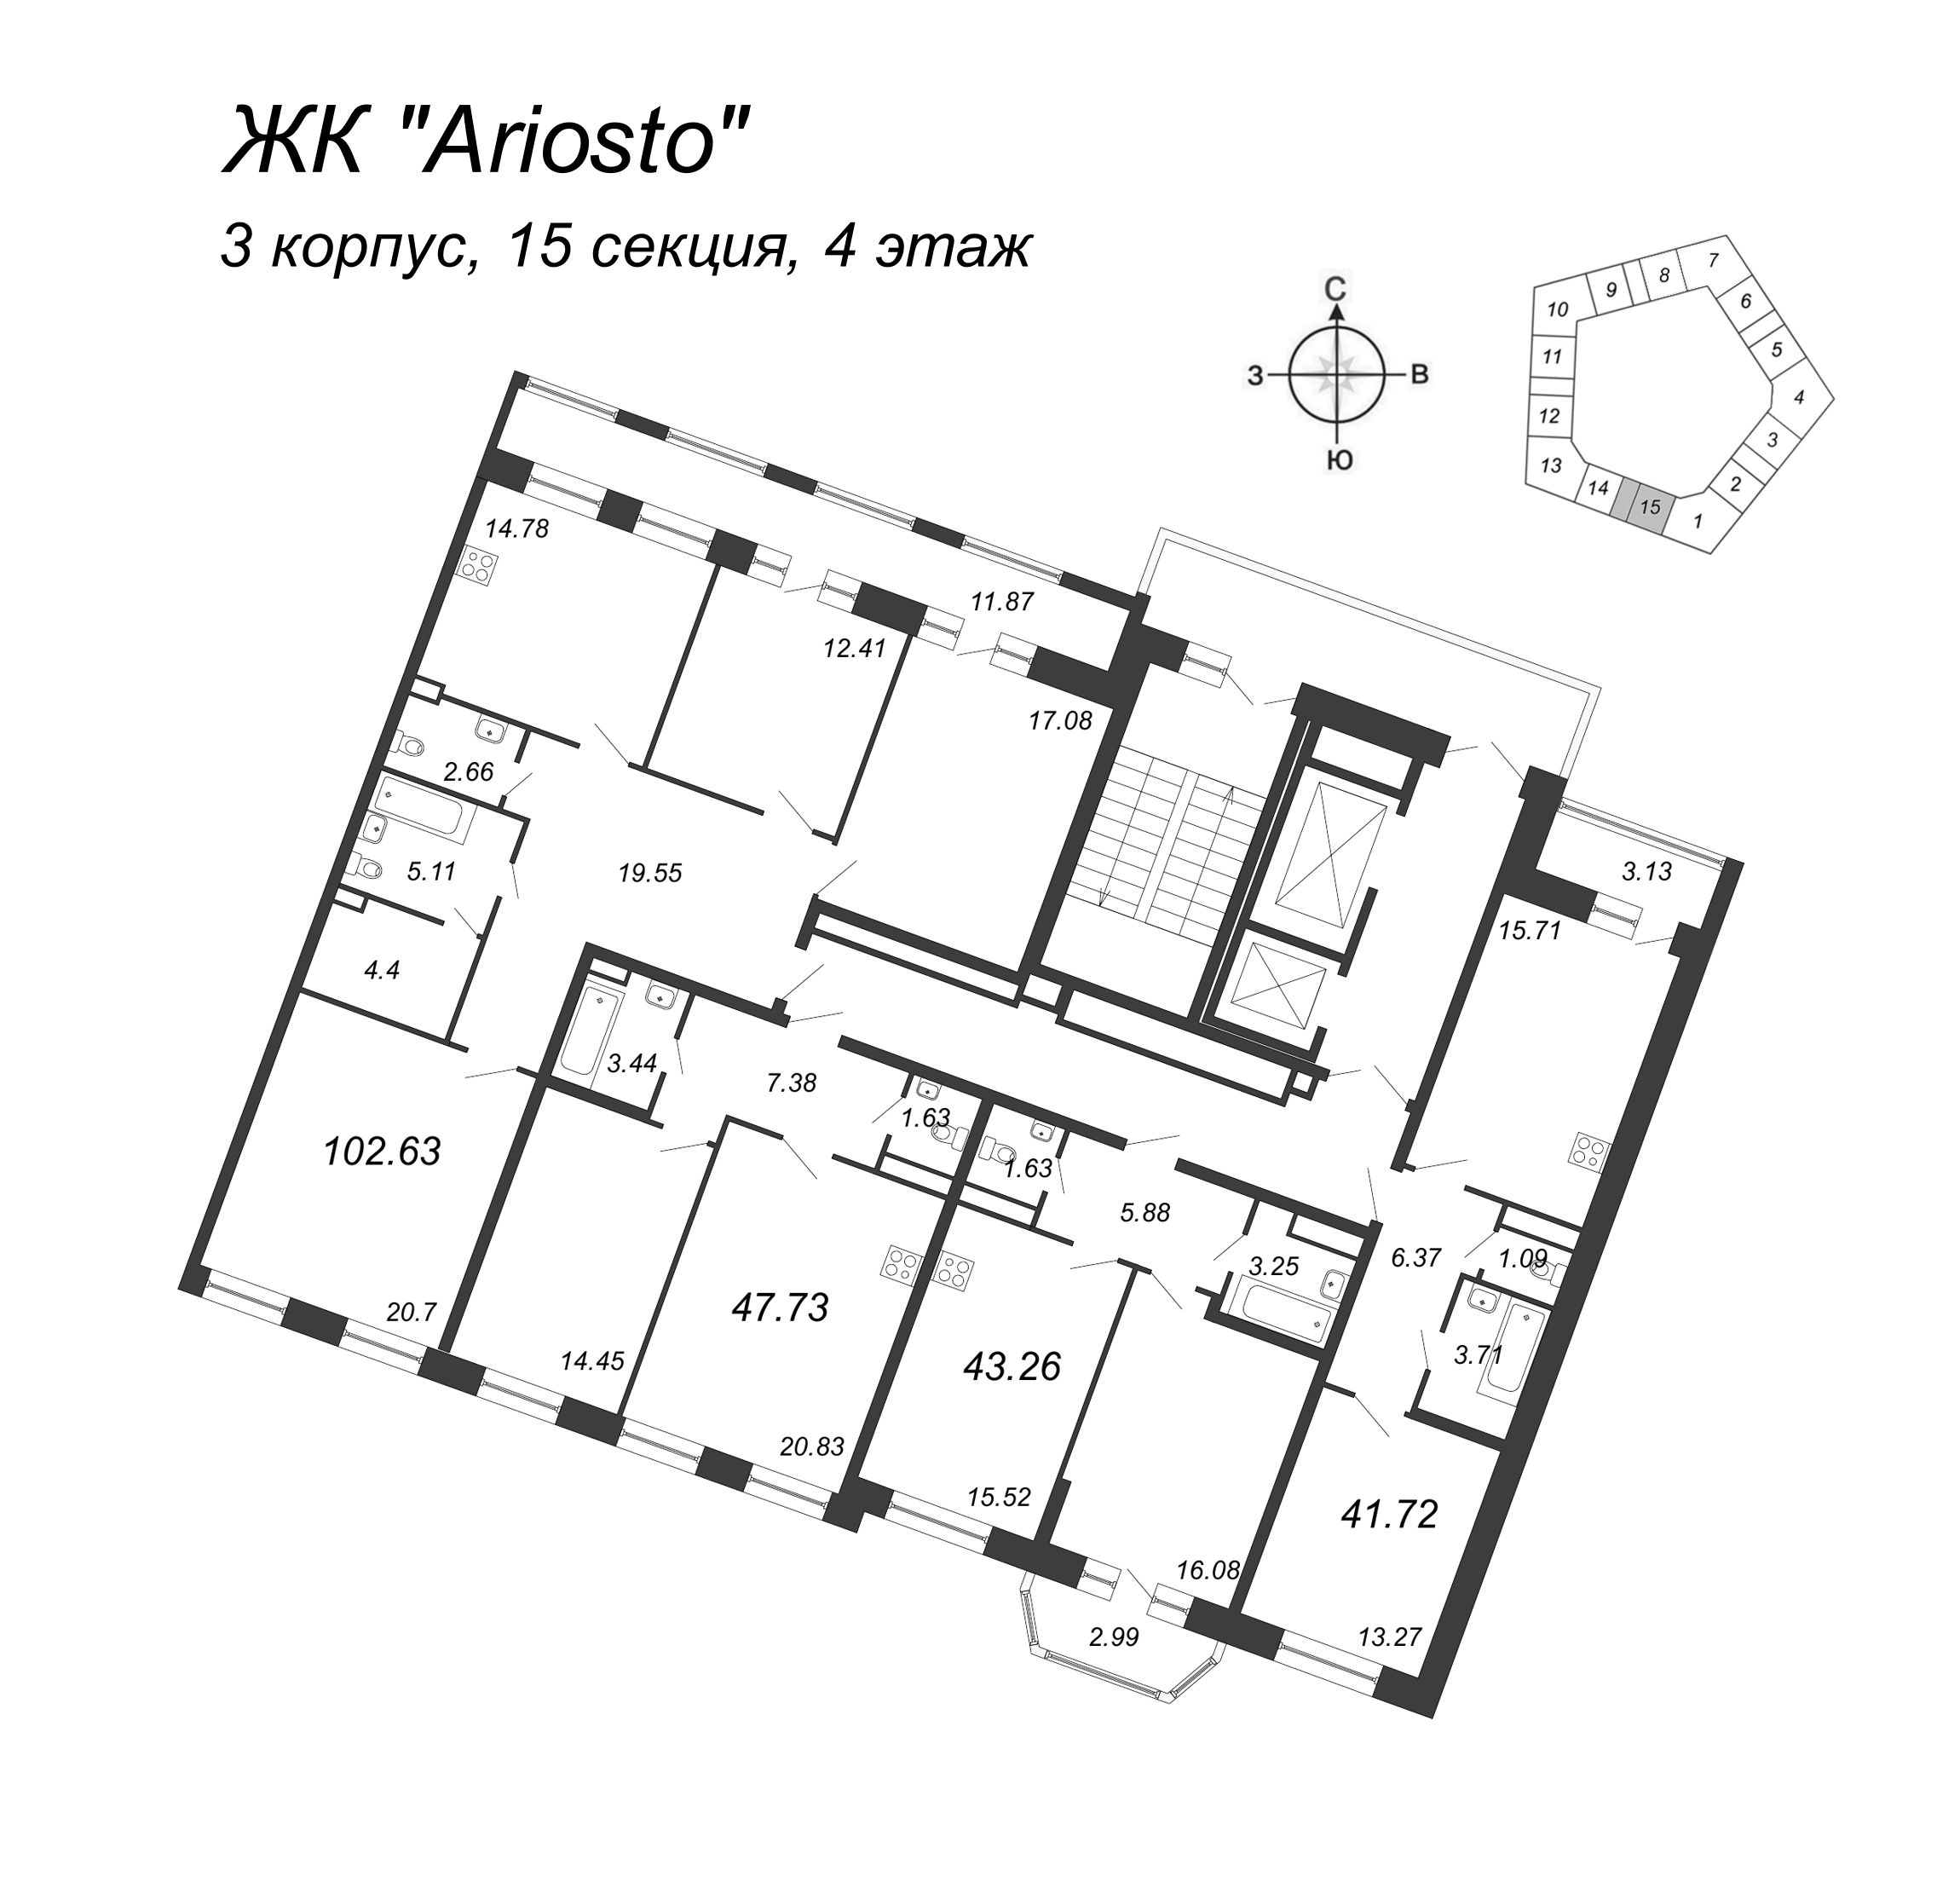 3-комнатная квартира, 102.63 м² в ЖК "Ariosto" - планировка этажа